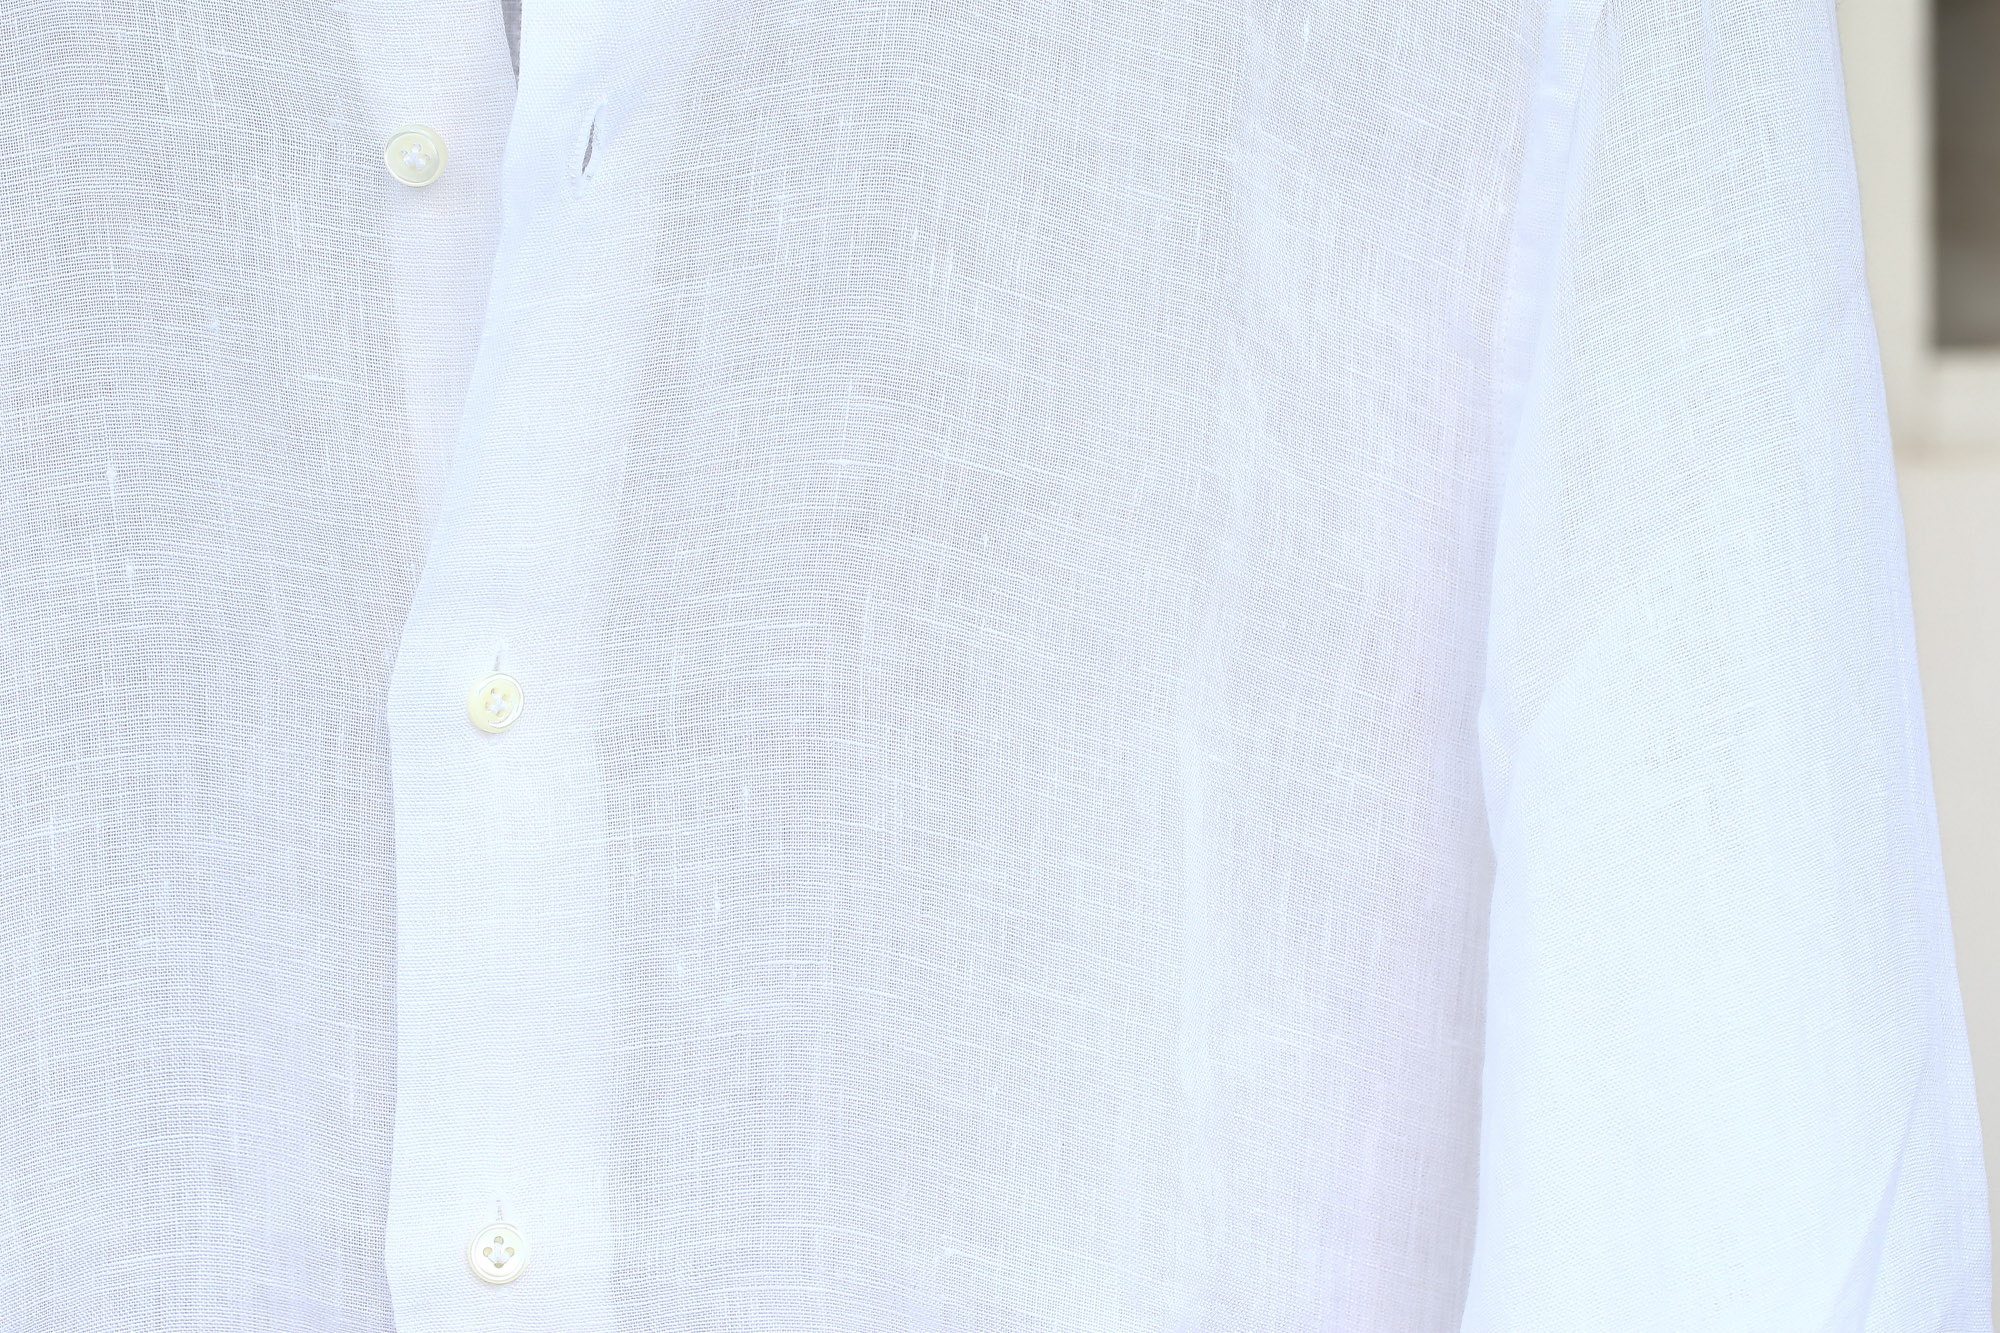 ALESSANDRO GHERARDI (アレッサンドロゲラルディ) Linen Shirts カッタウェイ リネンシャツ WHITE (ホワイト・000) made in italy(イタリア製) 2017 春夏新作 愛知 名古屋 Alto e Diritto アルト エ デリット alessandrogherardi シャツ